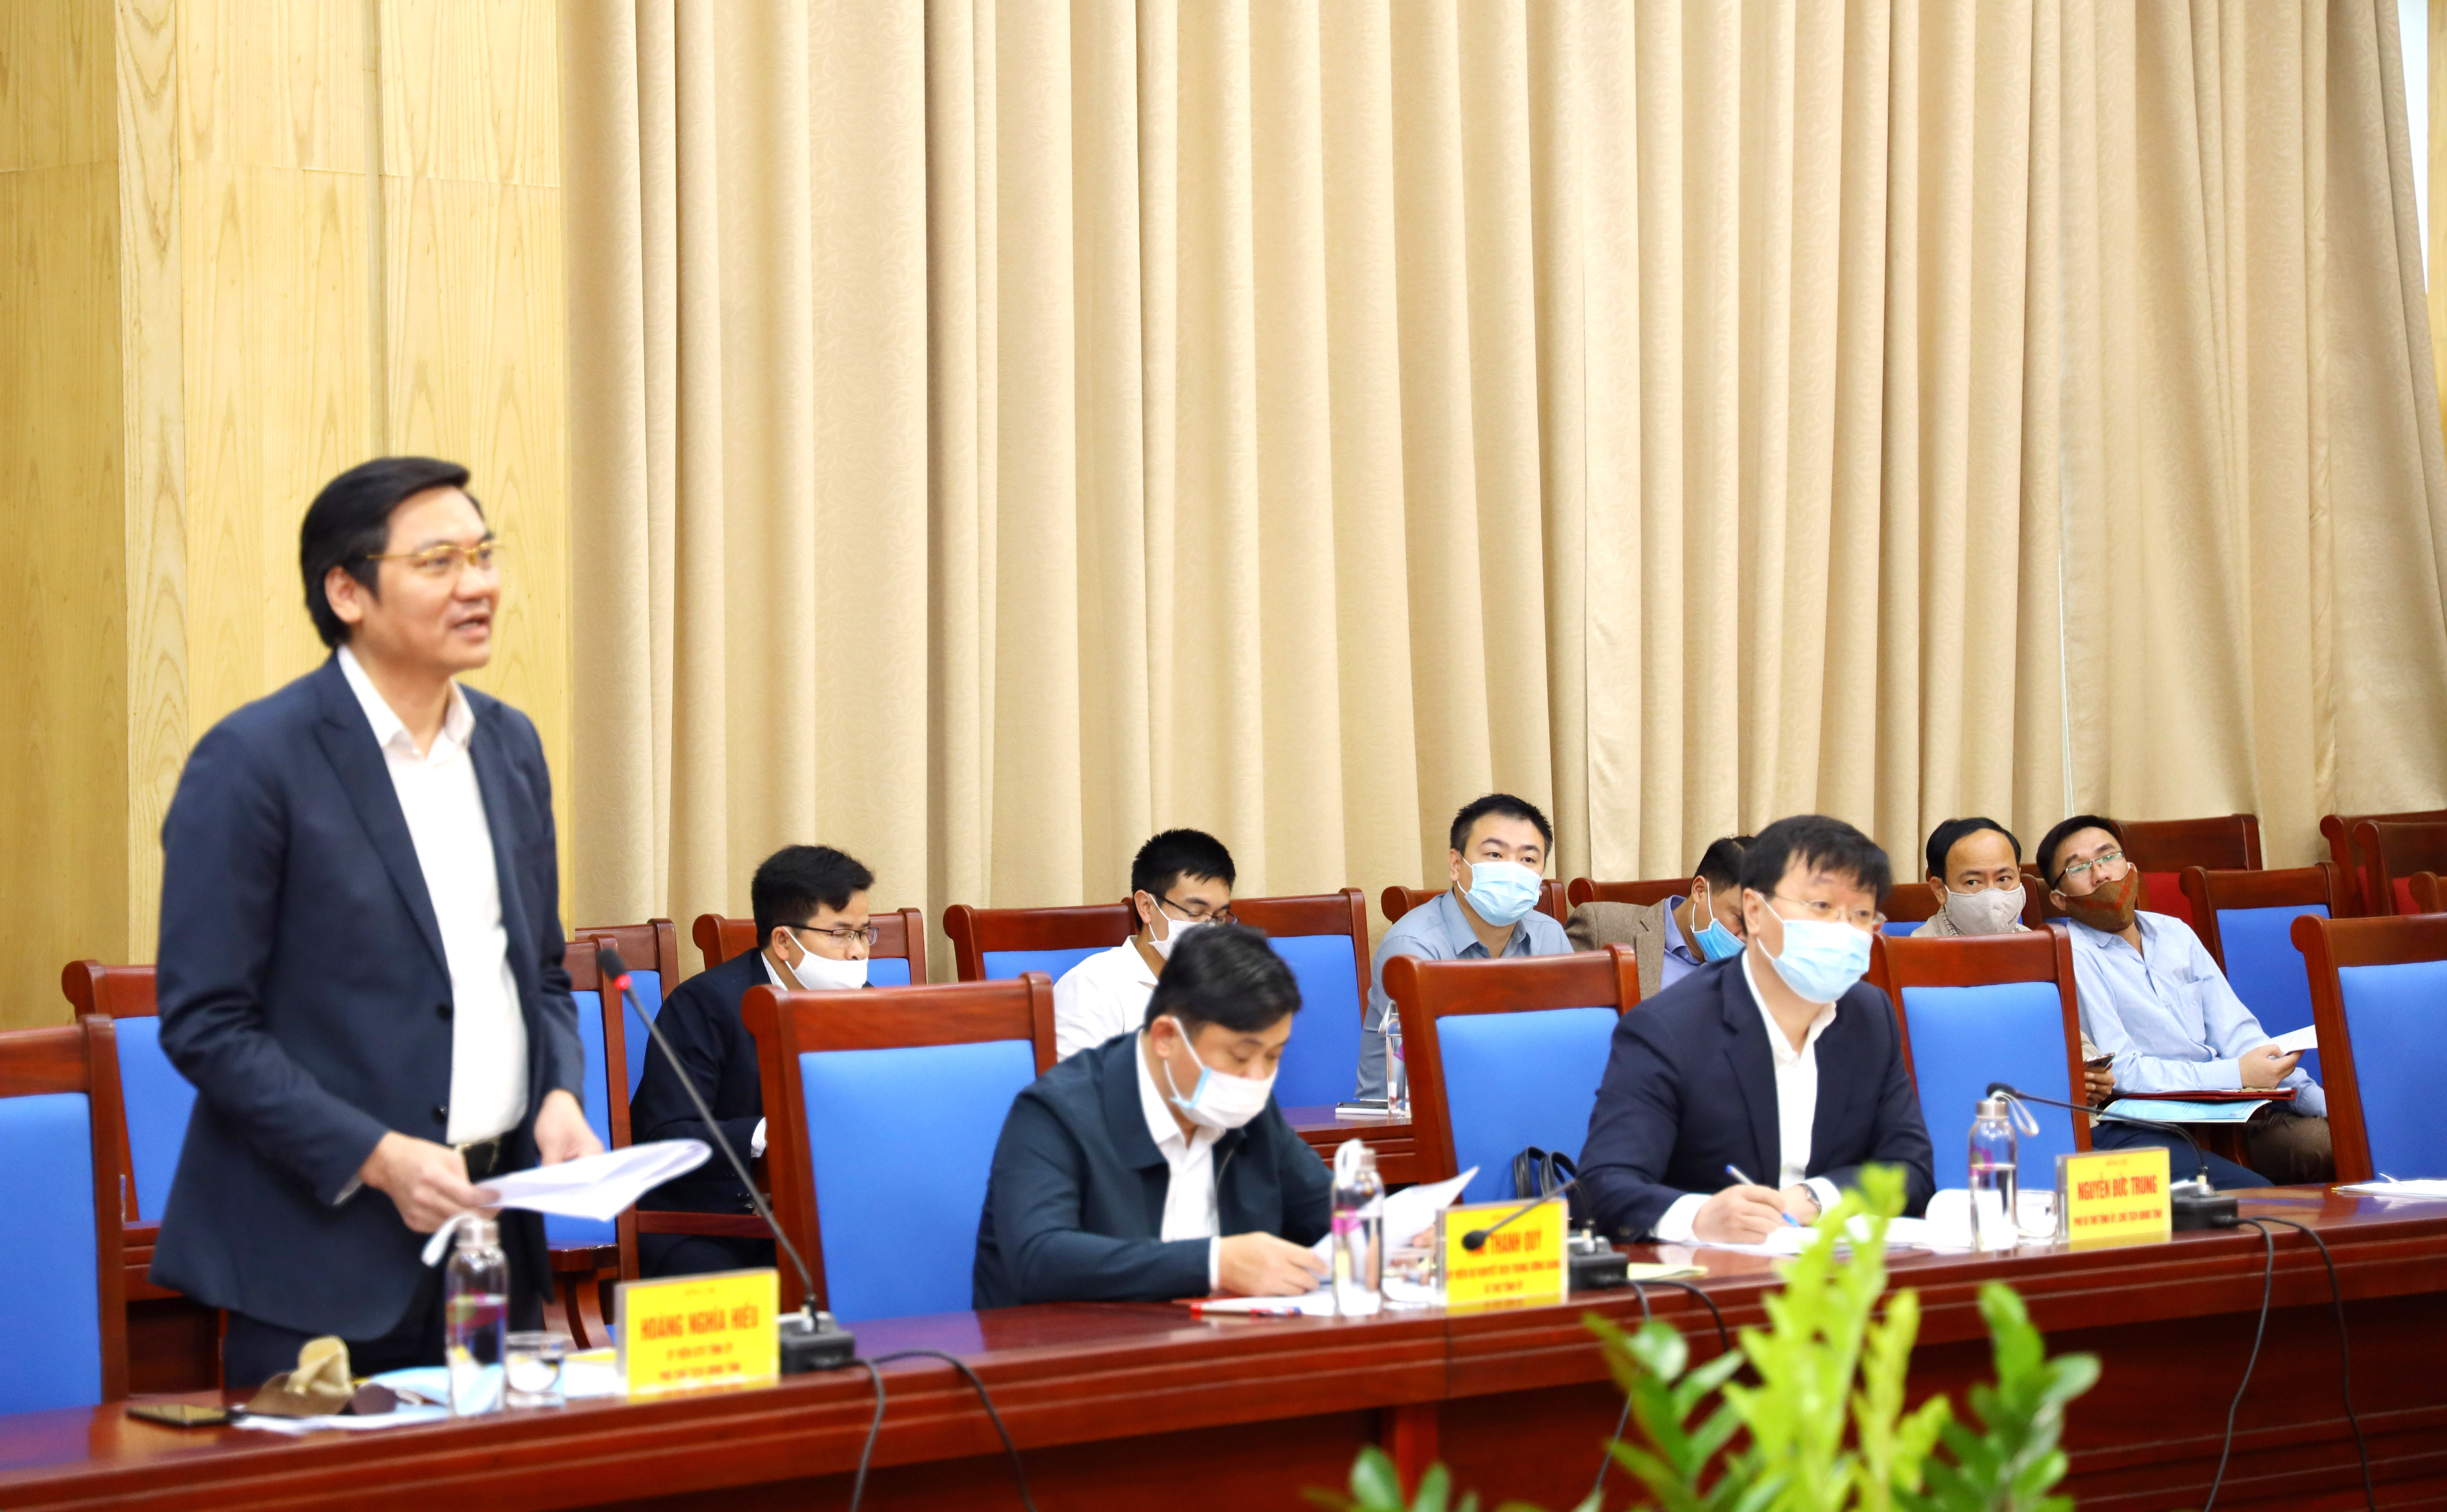 Đồng chí Hoàng Nghĩa Hiếu - Ủy viên BTV Tỉnh ủy, Phó Chủ tịch UBND tỉnh báo cáo tình hình sản xuất nông nghiệp ở Nghệ An. Ảnh Nguyên Sơn.